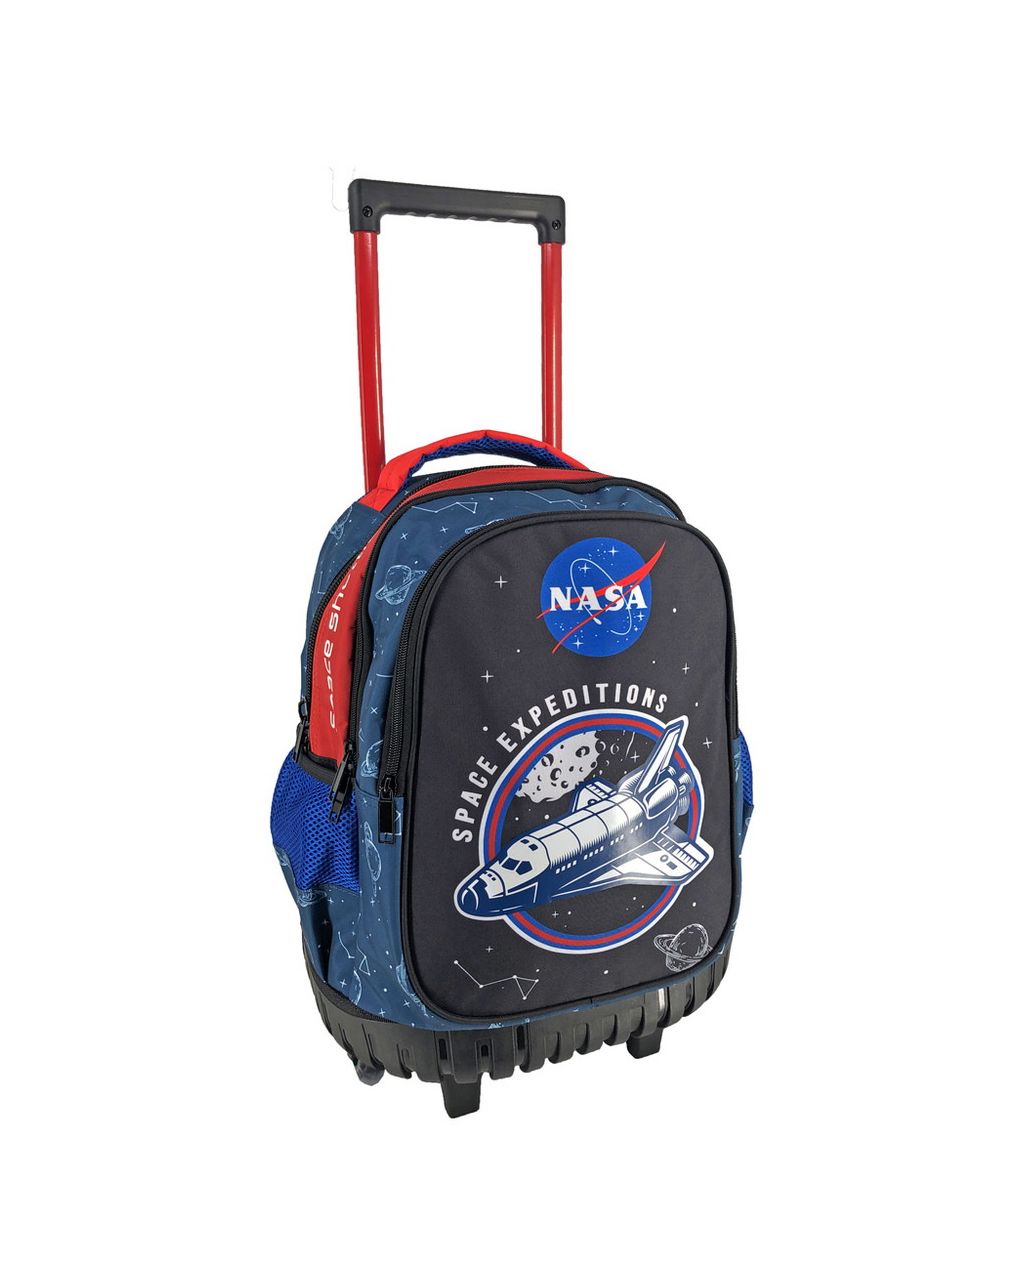 σχολική τσάντα τρόλεϊ δημοτικού nasa space expeditions 3 θήκες 000486033 - NASA